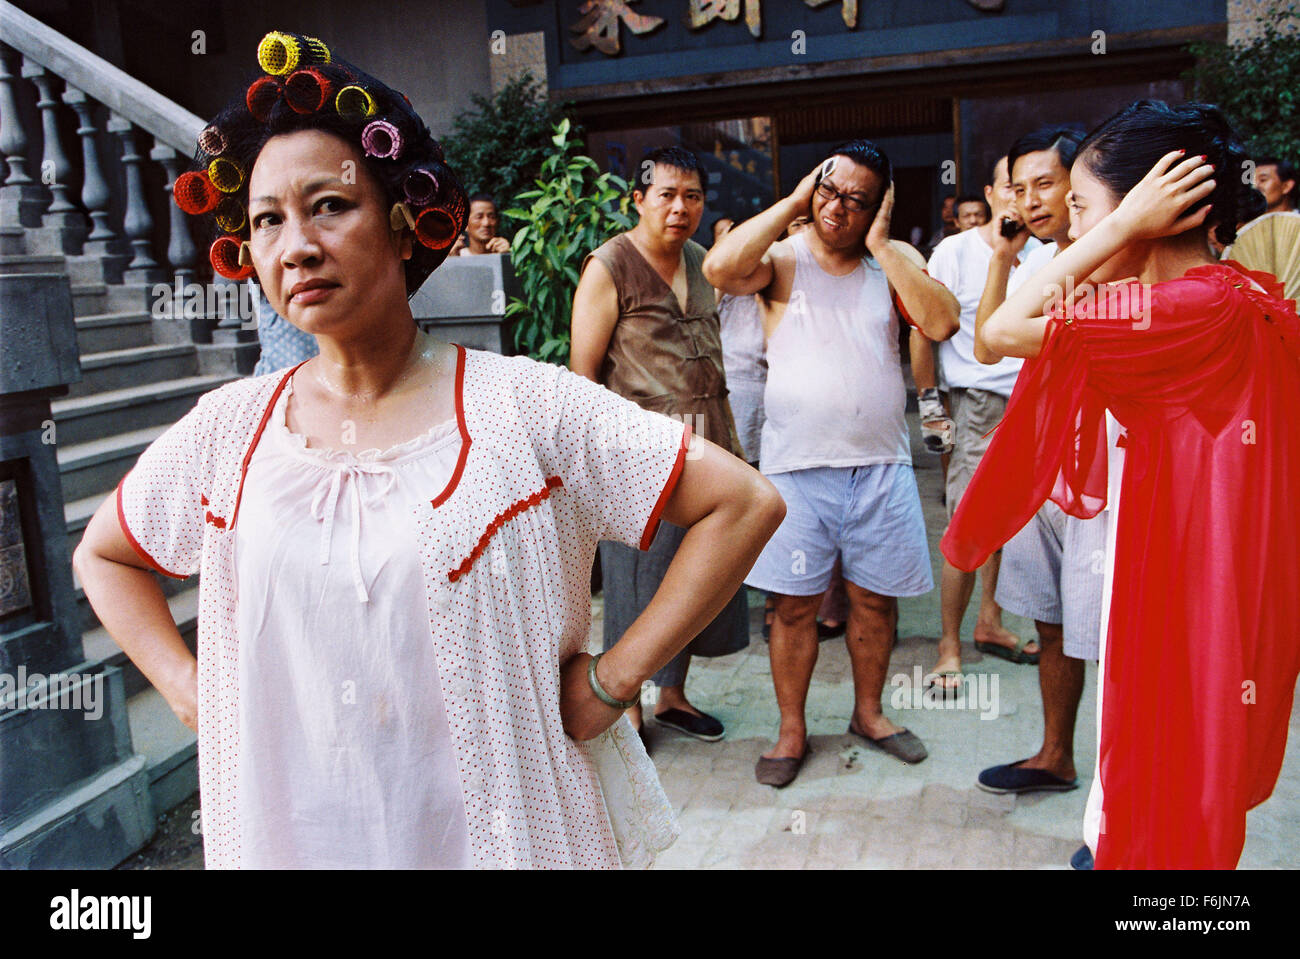 Fecha de lanzamiento: 22 de abril de 2005. Película: Kung Fu Sión. Estudio:  Taihe Film. Parcela: Establecido en el Cantón, China, en 1940, la historia  gira en una ciudad gobernada por la